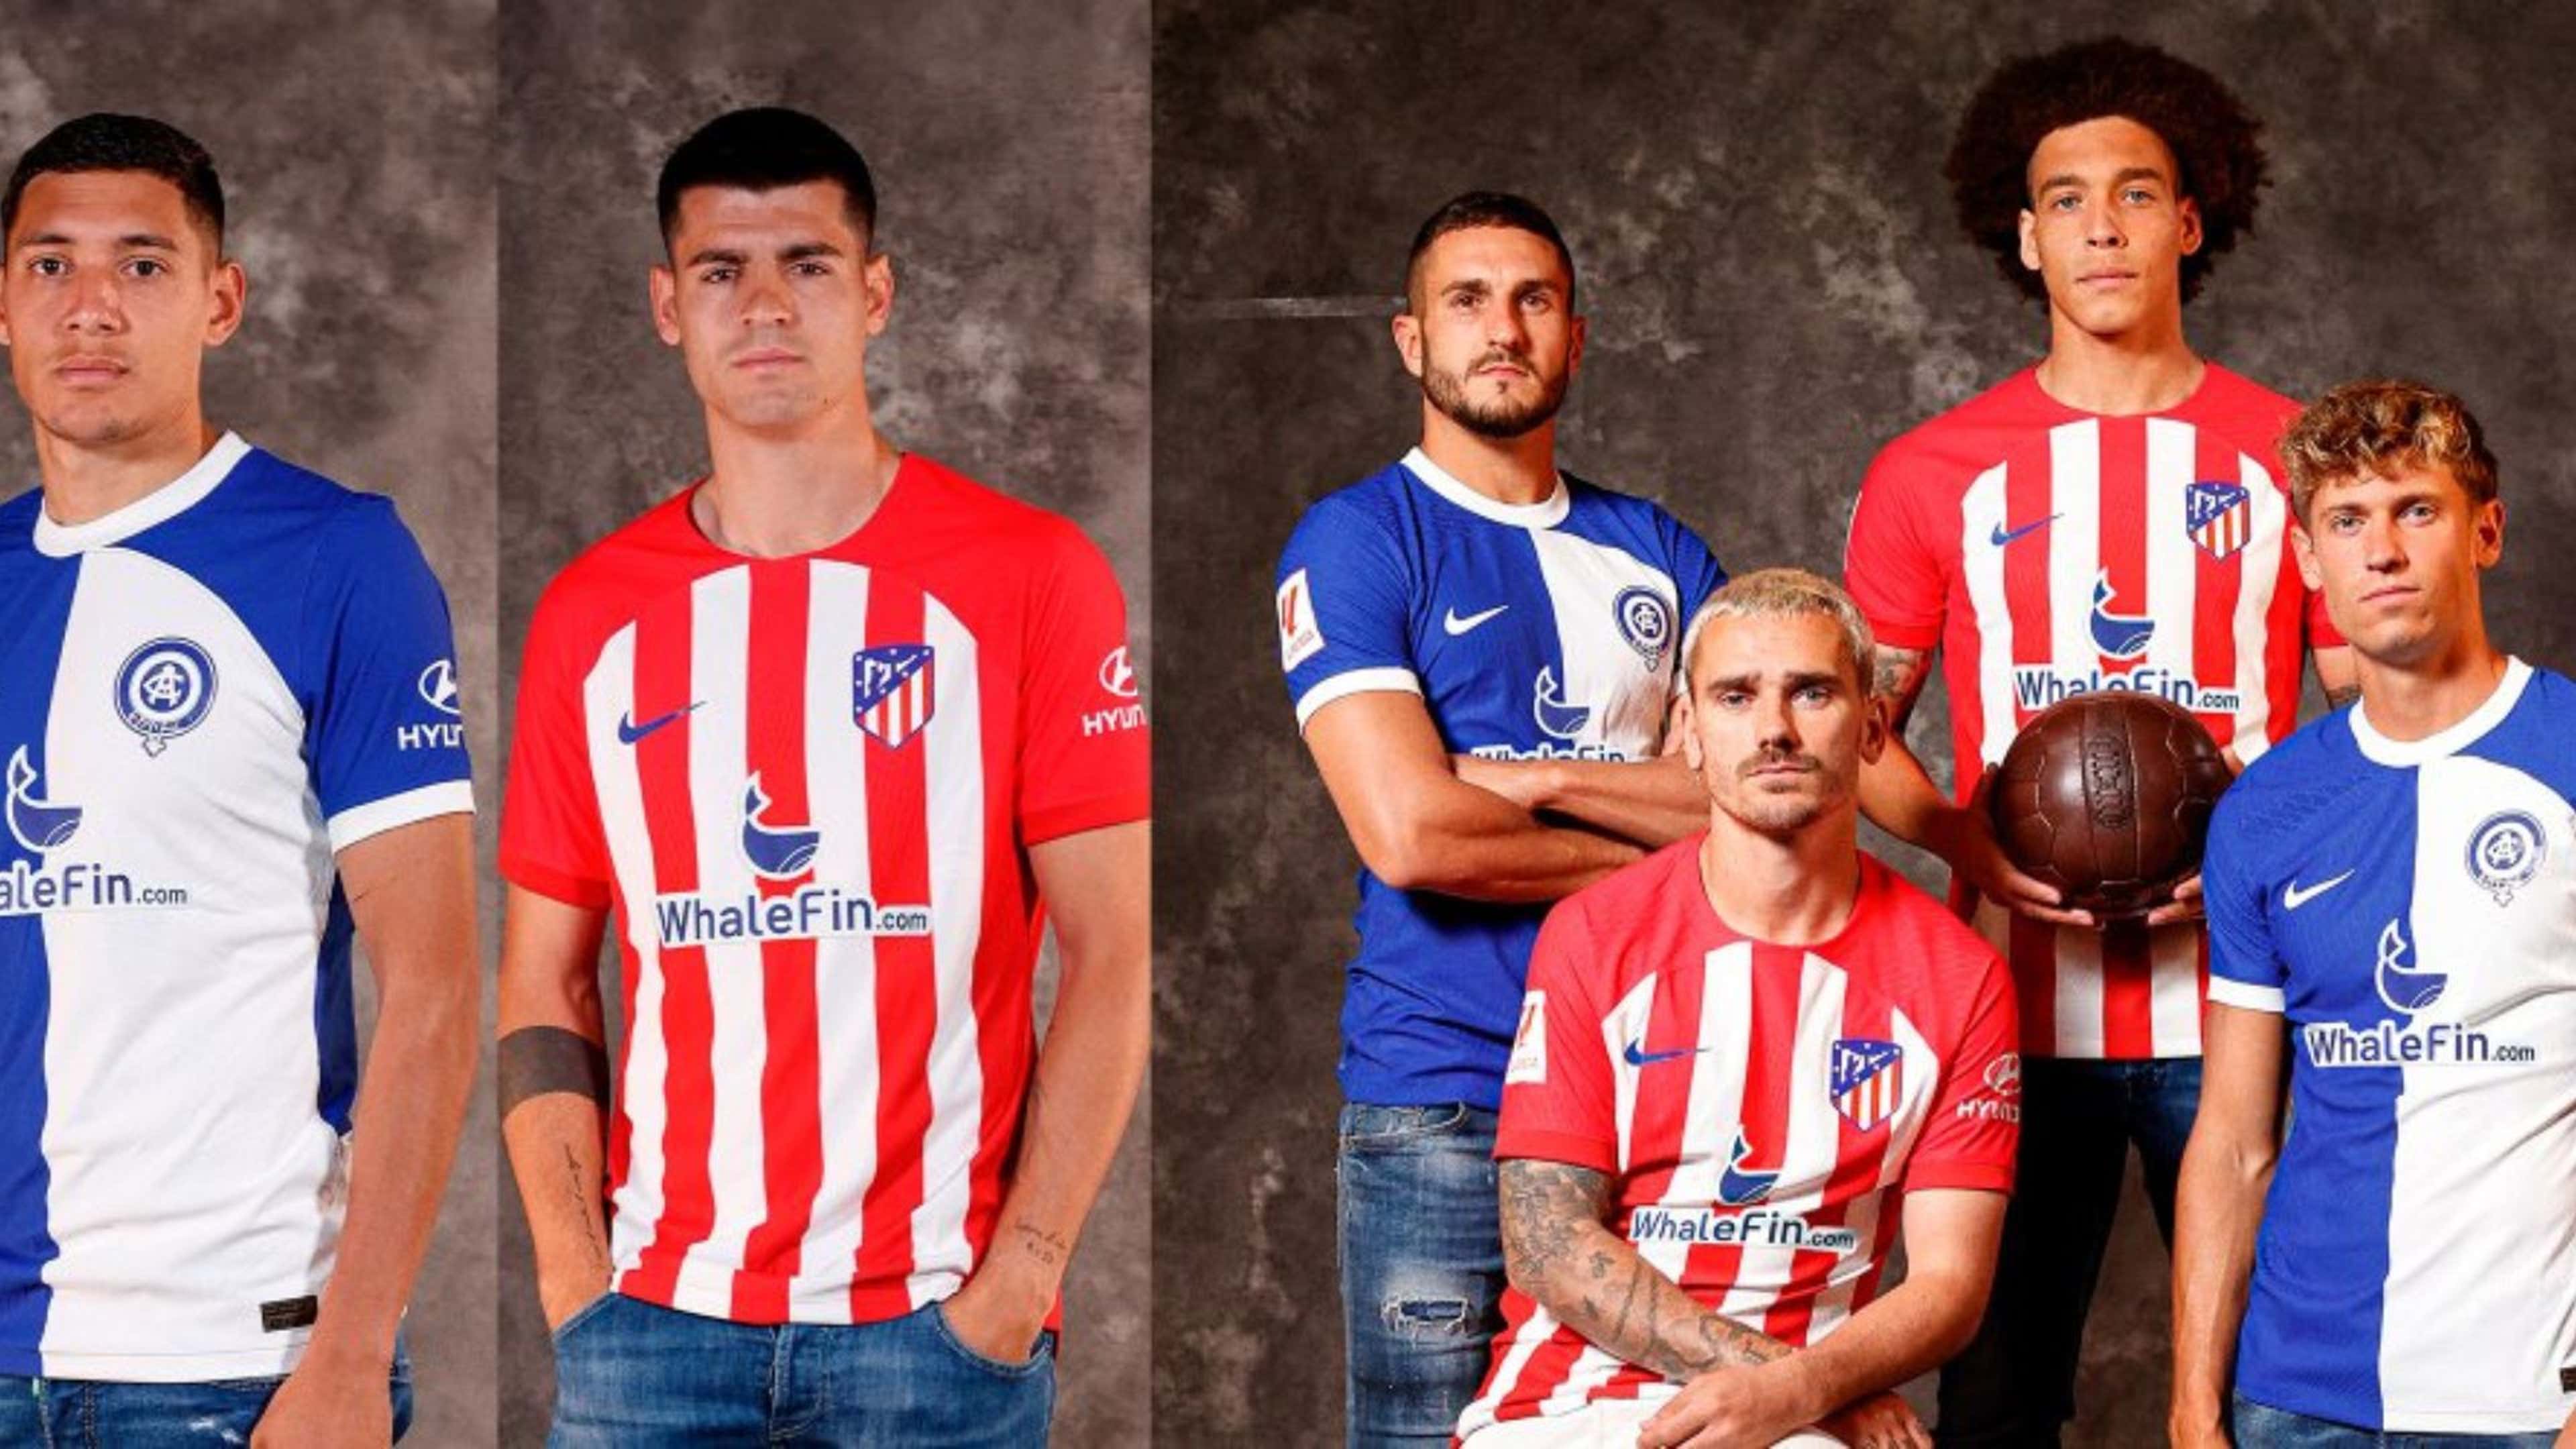 Conoce el nuevo uniforme del Atlético de Madrid y del Mónaco